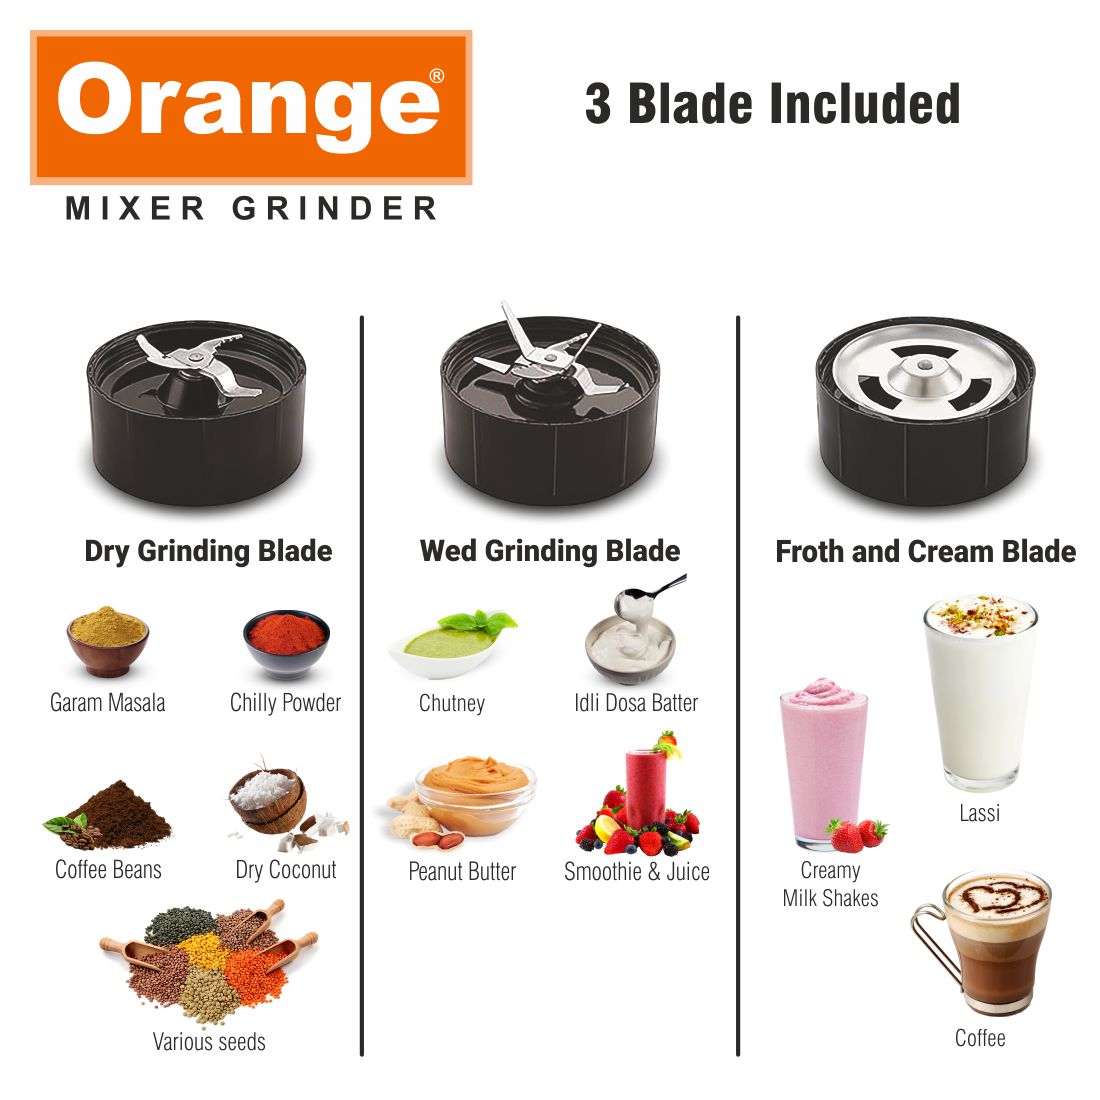 Orange Nexo Series 5 Jar Nutra Blend Pro 450 Watts Mixer Grinder | 1Year Copper Motor Warranty | Black